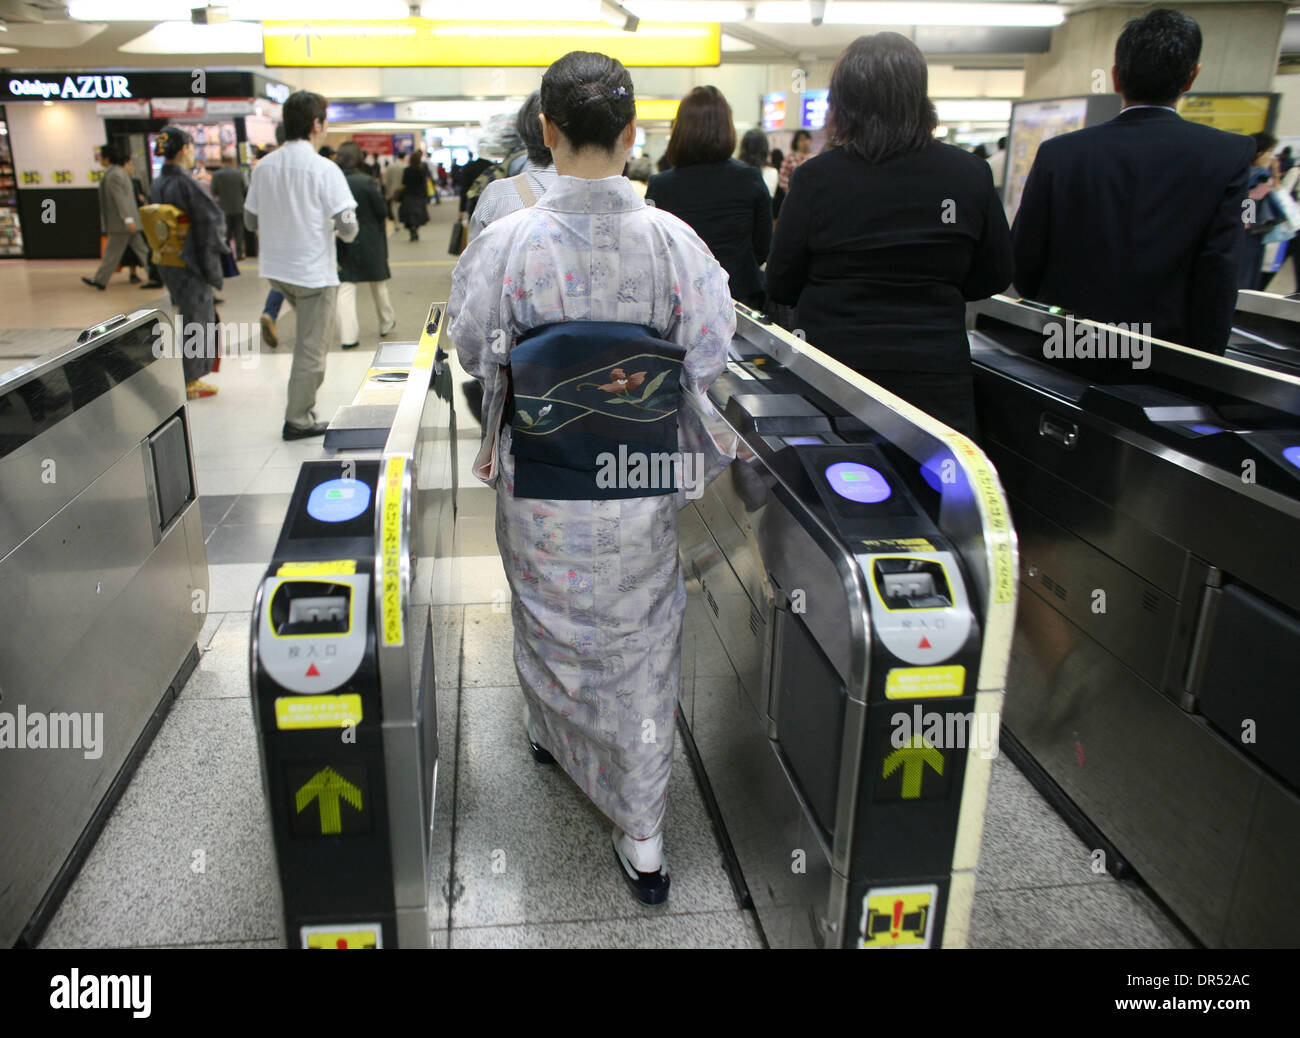 Frauen tragen einen traditionellen Kimono, betritt eine Frau die u-Bahn. Tokios u-Bahn-System ist gut entwickelt und organisiert. Mit Züge alle zwei Minuten können einige Stationen mehr als 1 Million Passagiere pro Tag transportieren. Stockfoto